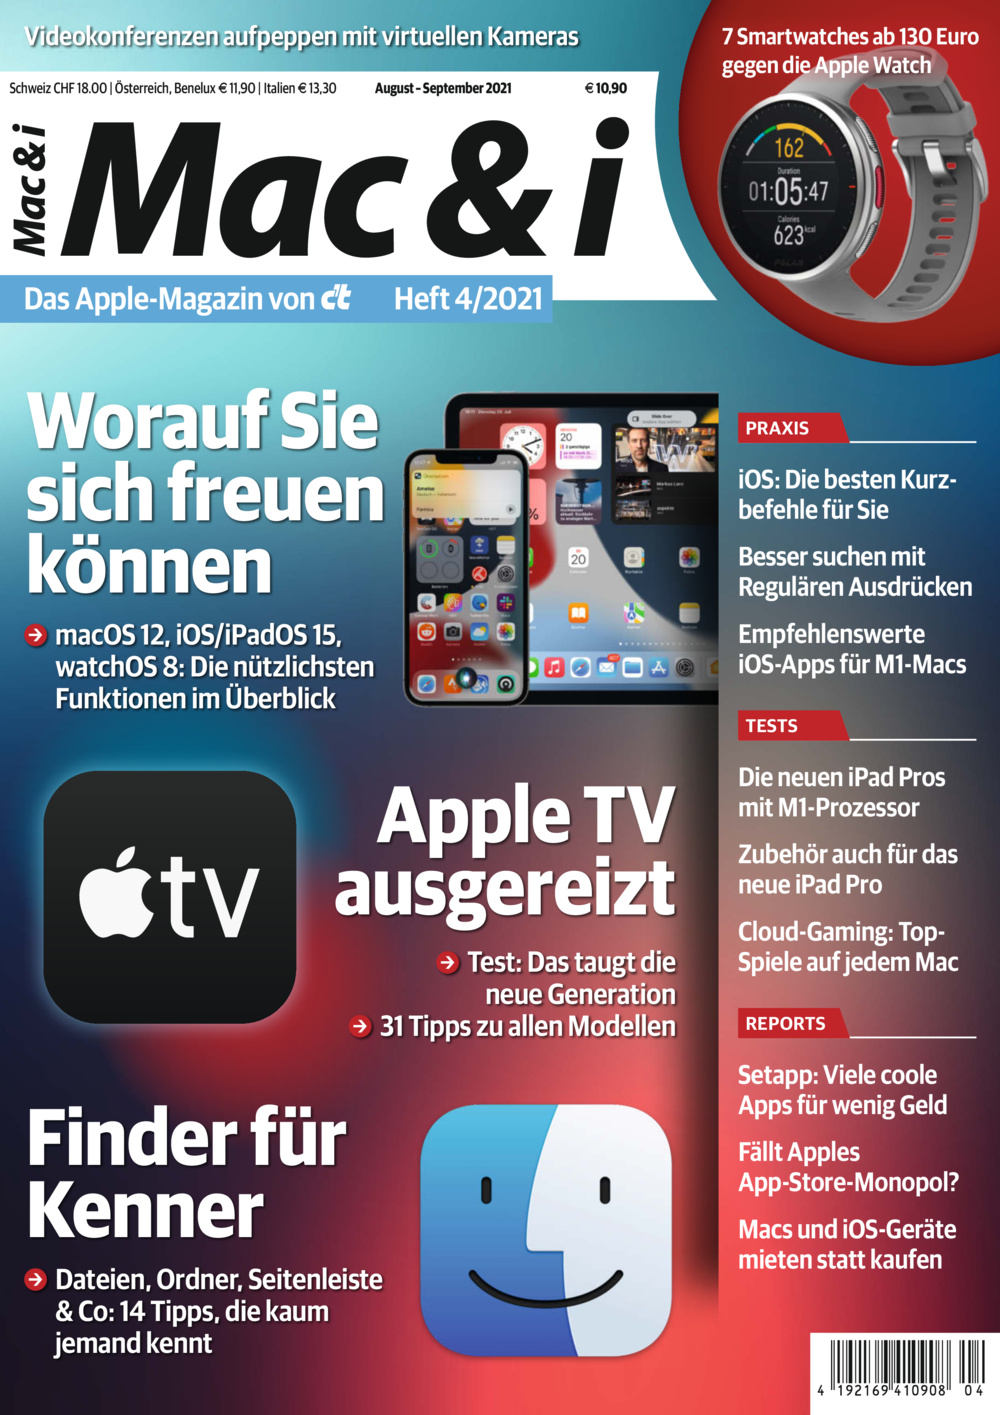 Inhaltsverzeichnis | Mac & i | Heise Magazine